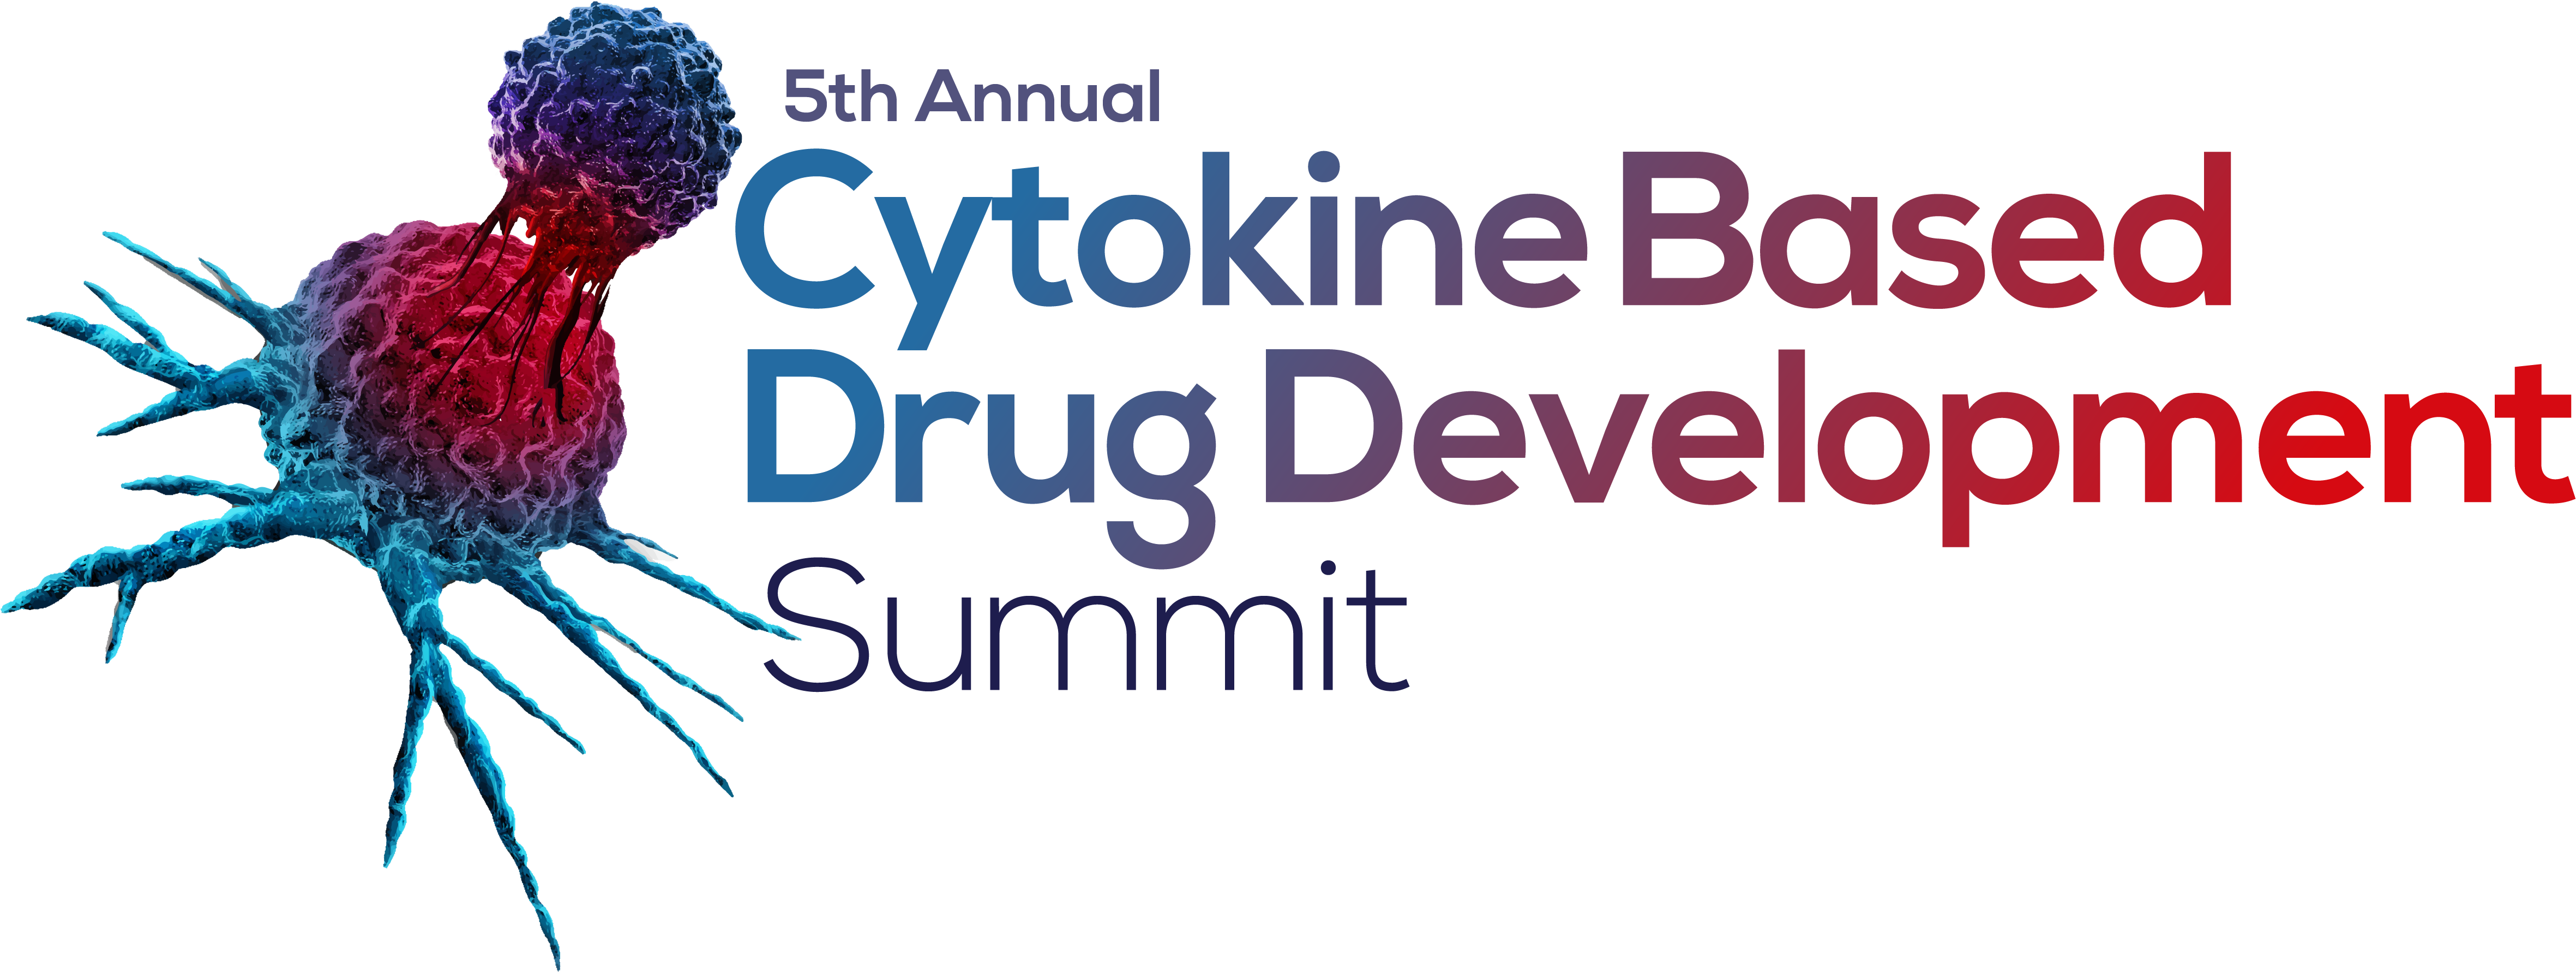 HW231117 5th Cytokine Based Drug Development Summit logo